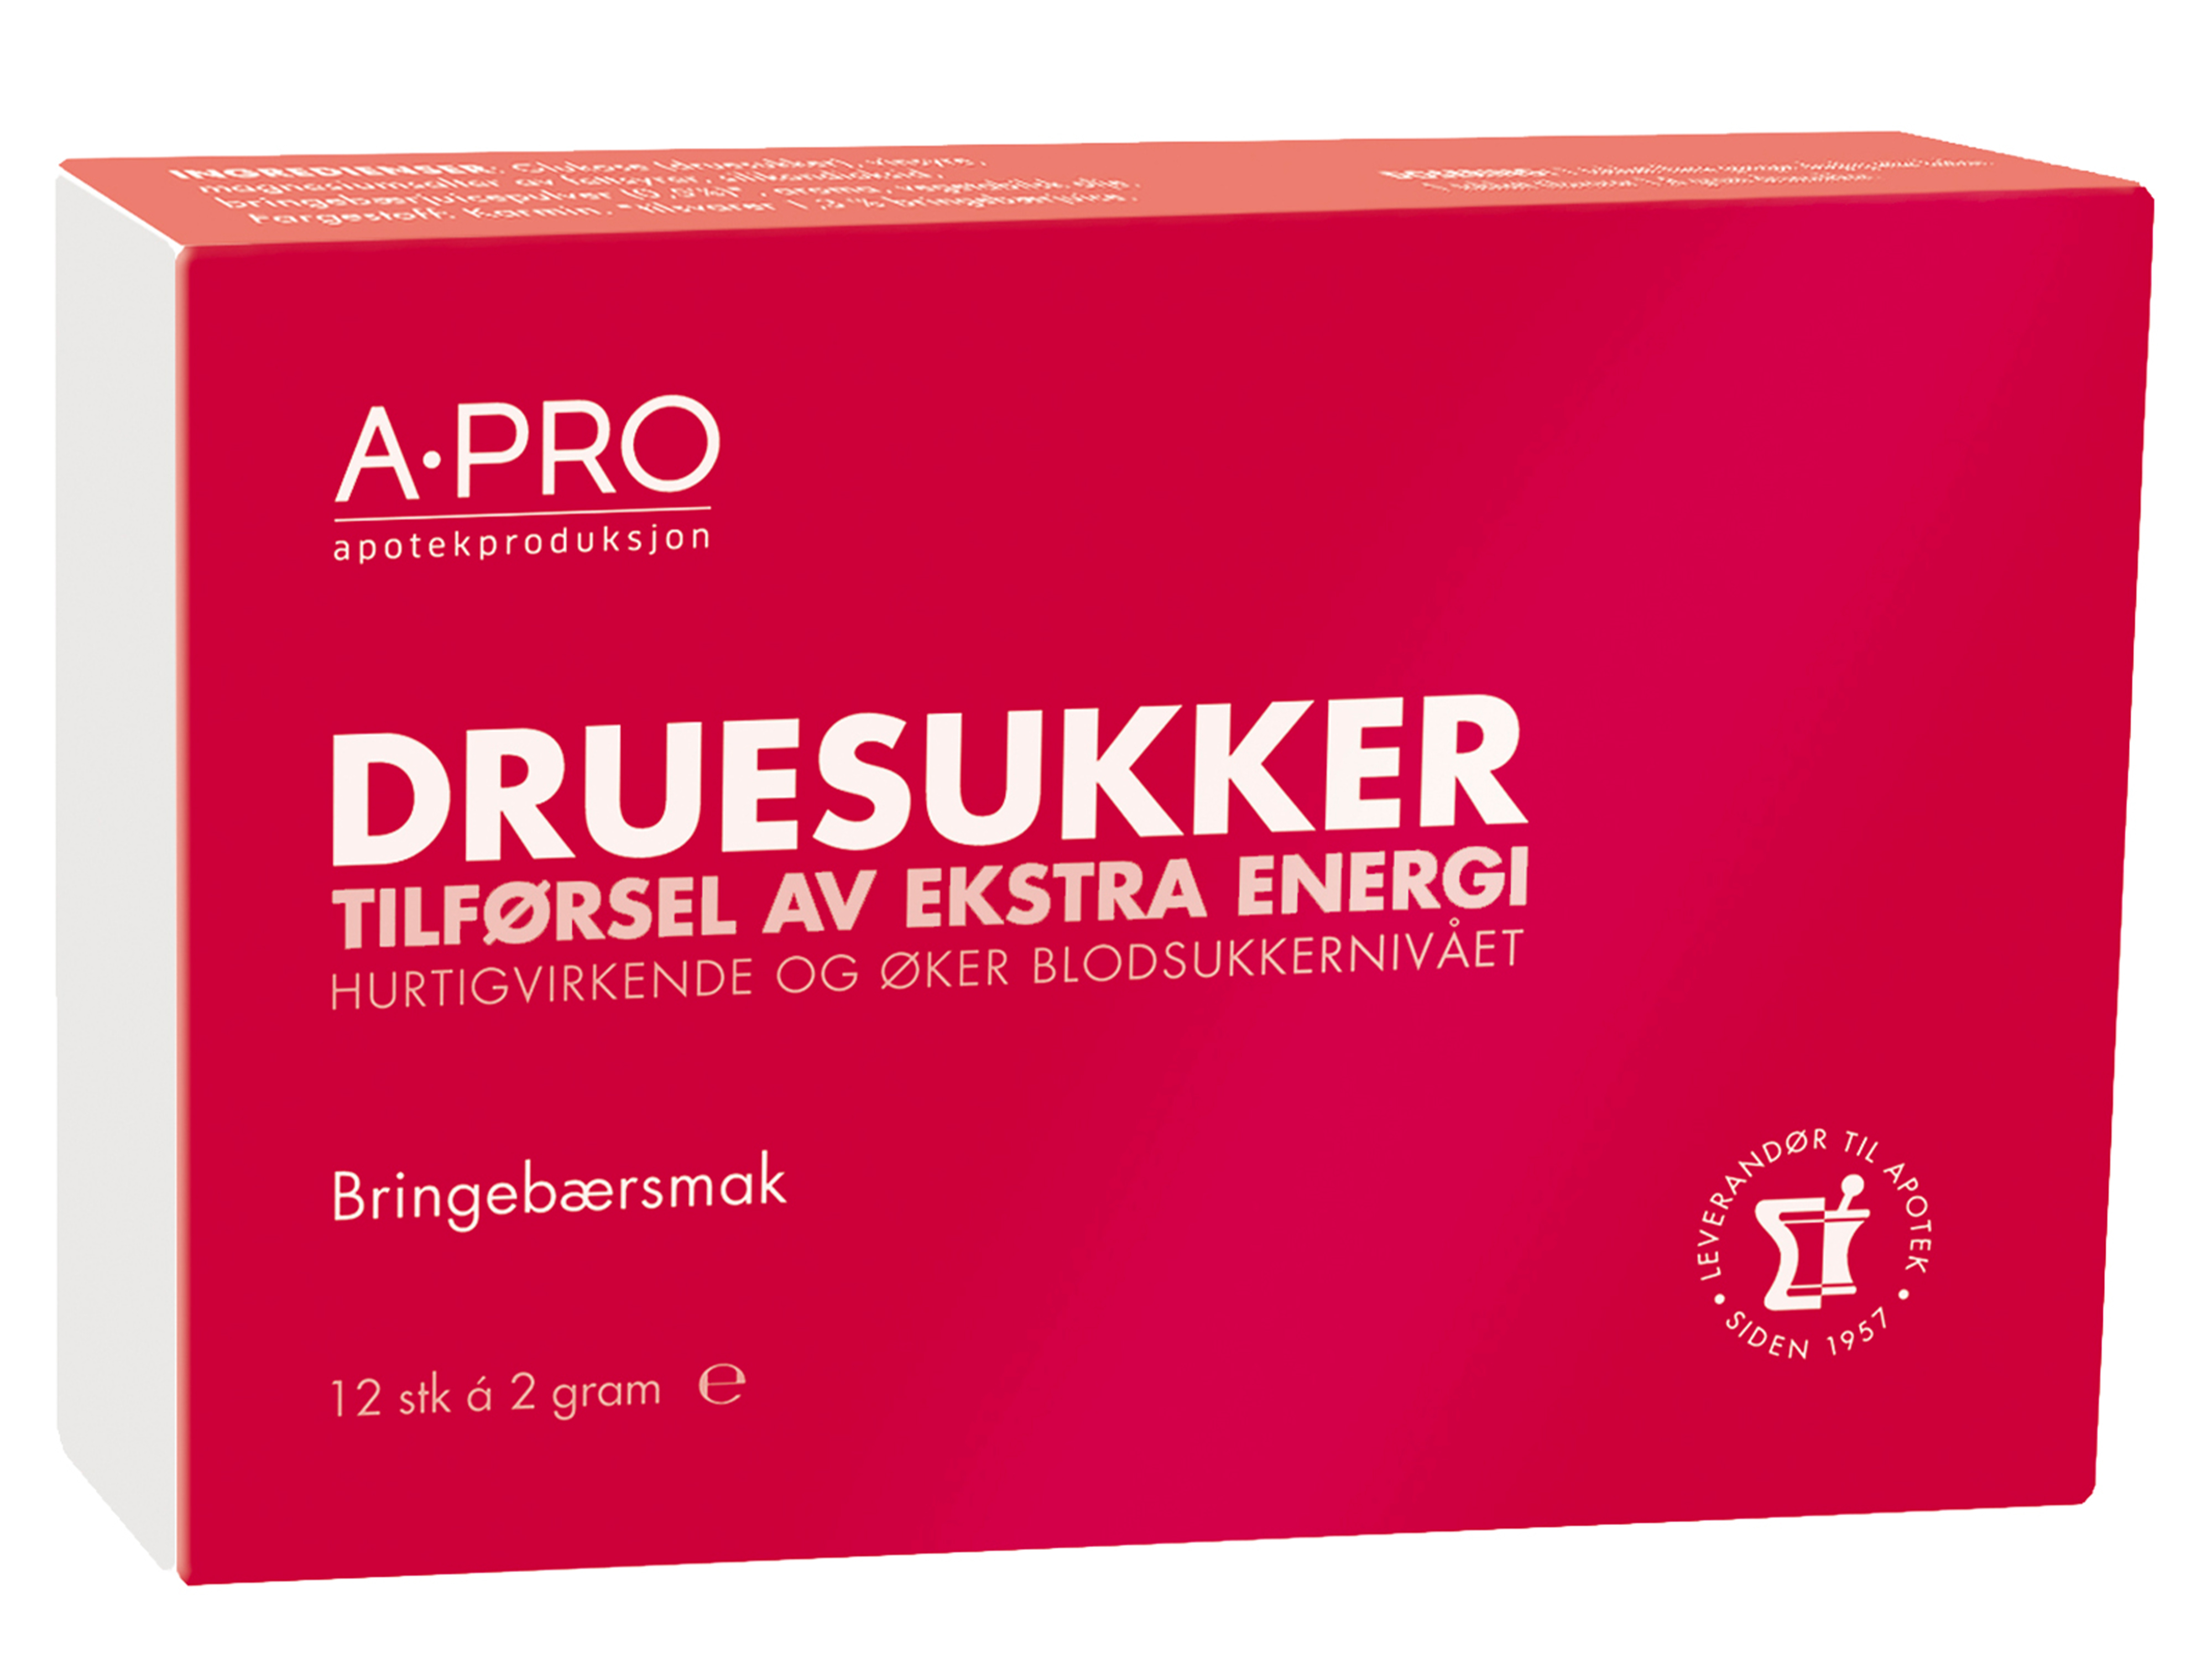 Apro A-PRO Druesukker tabletter 2 gram, 12 stk. på brett